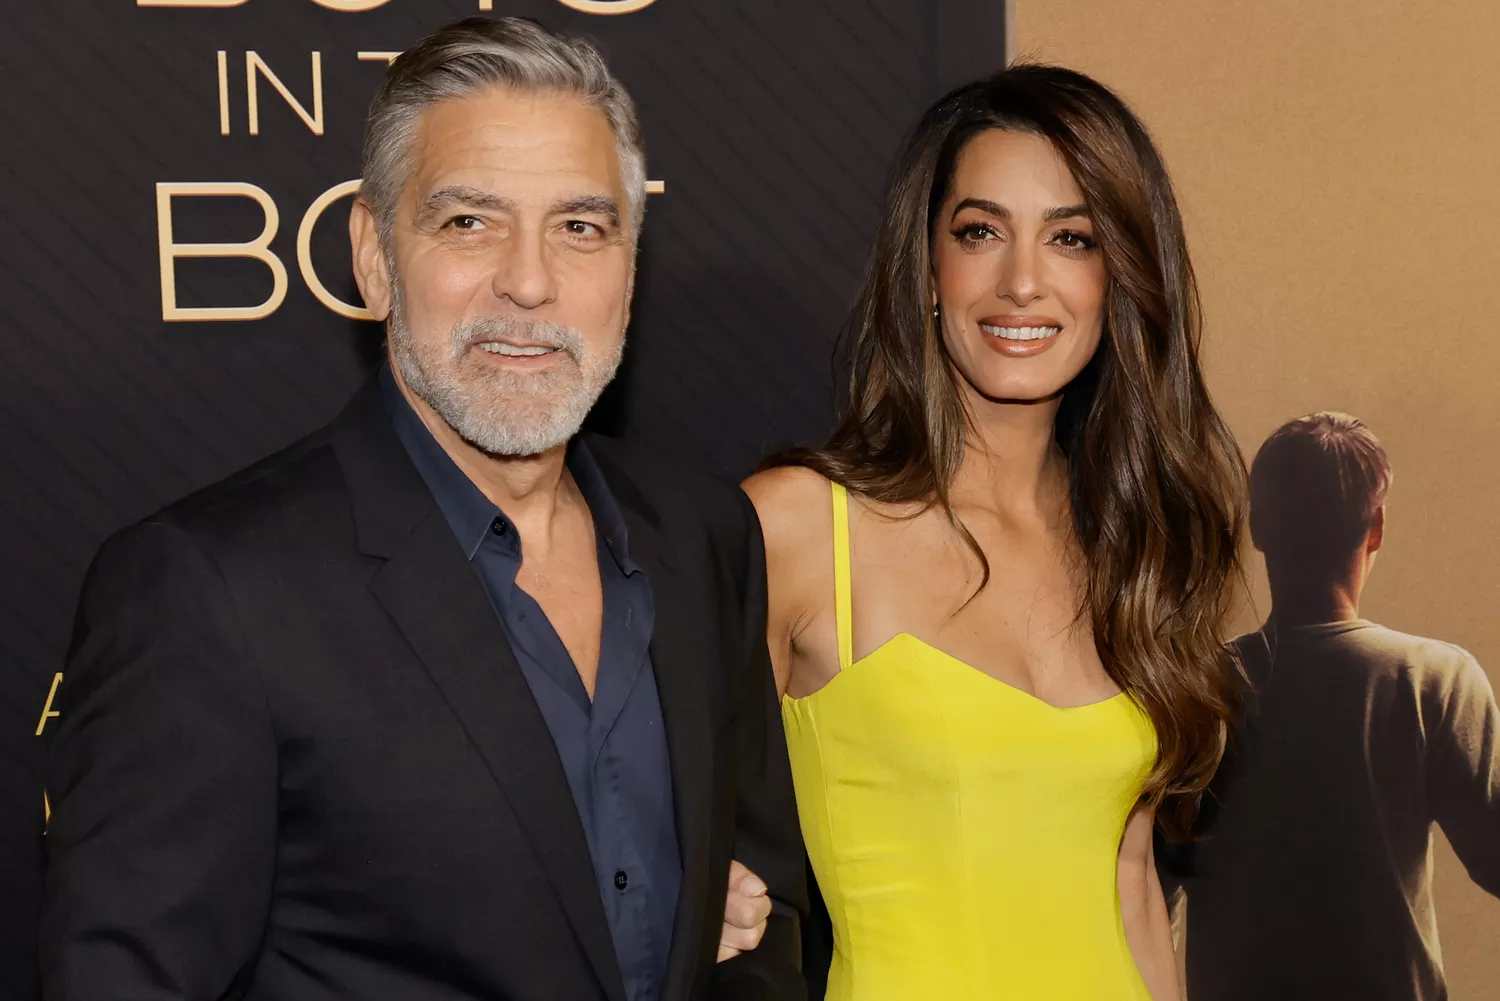 Os Looks de Amal que fazem George Clooney sentir vergonha do próprio visual; veja fotos